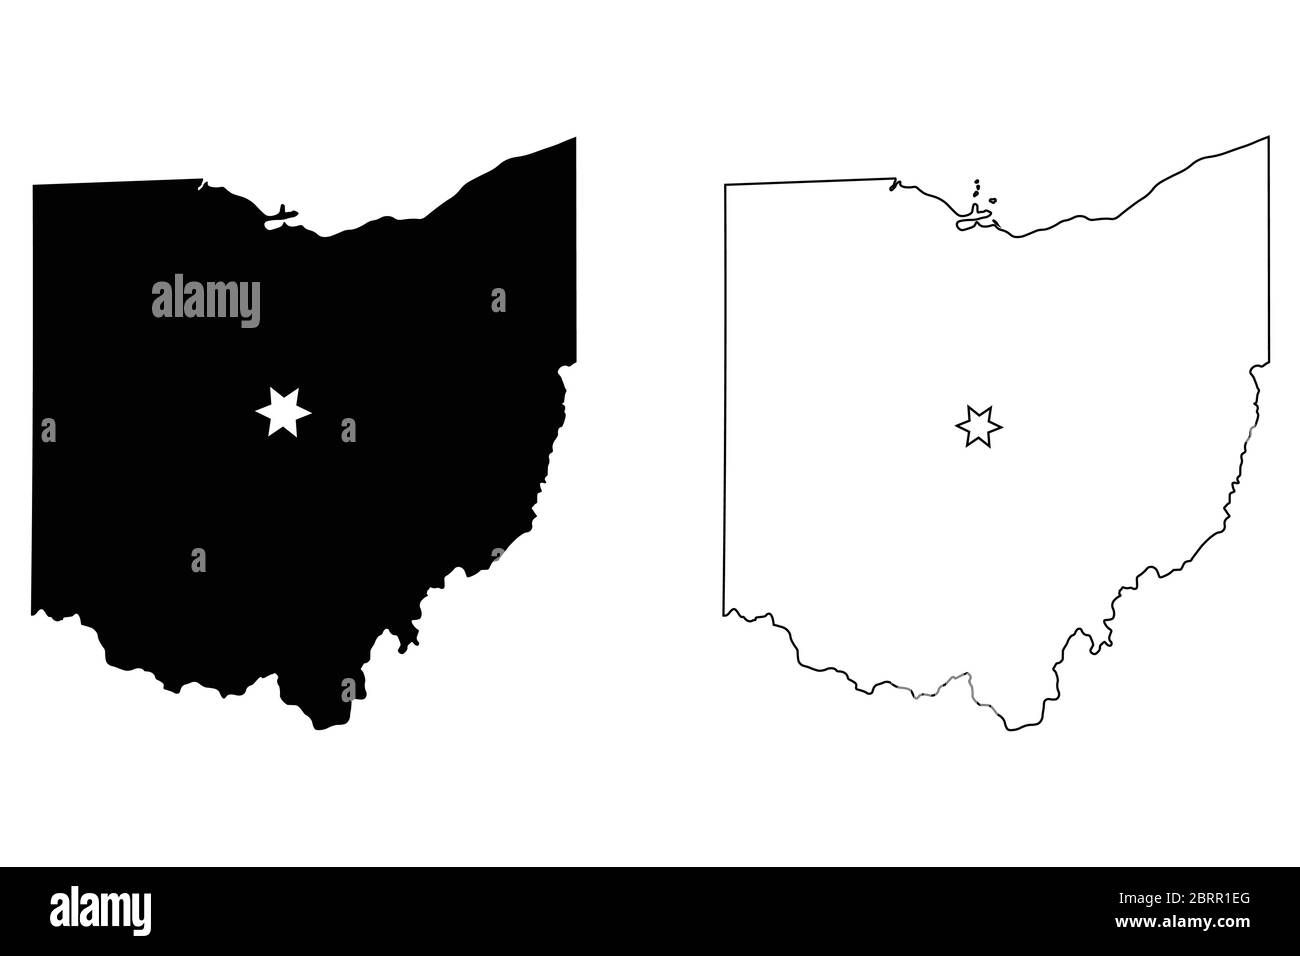 Ohio OH State Karte USA mit Capital City Star in Columbus. Schwarze Silhouette und Umriss isoliert auf weißem Hintergrund. EPS-Vektor Stock Vektor